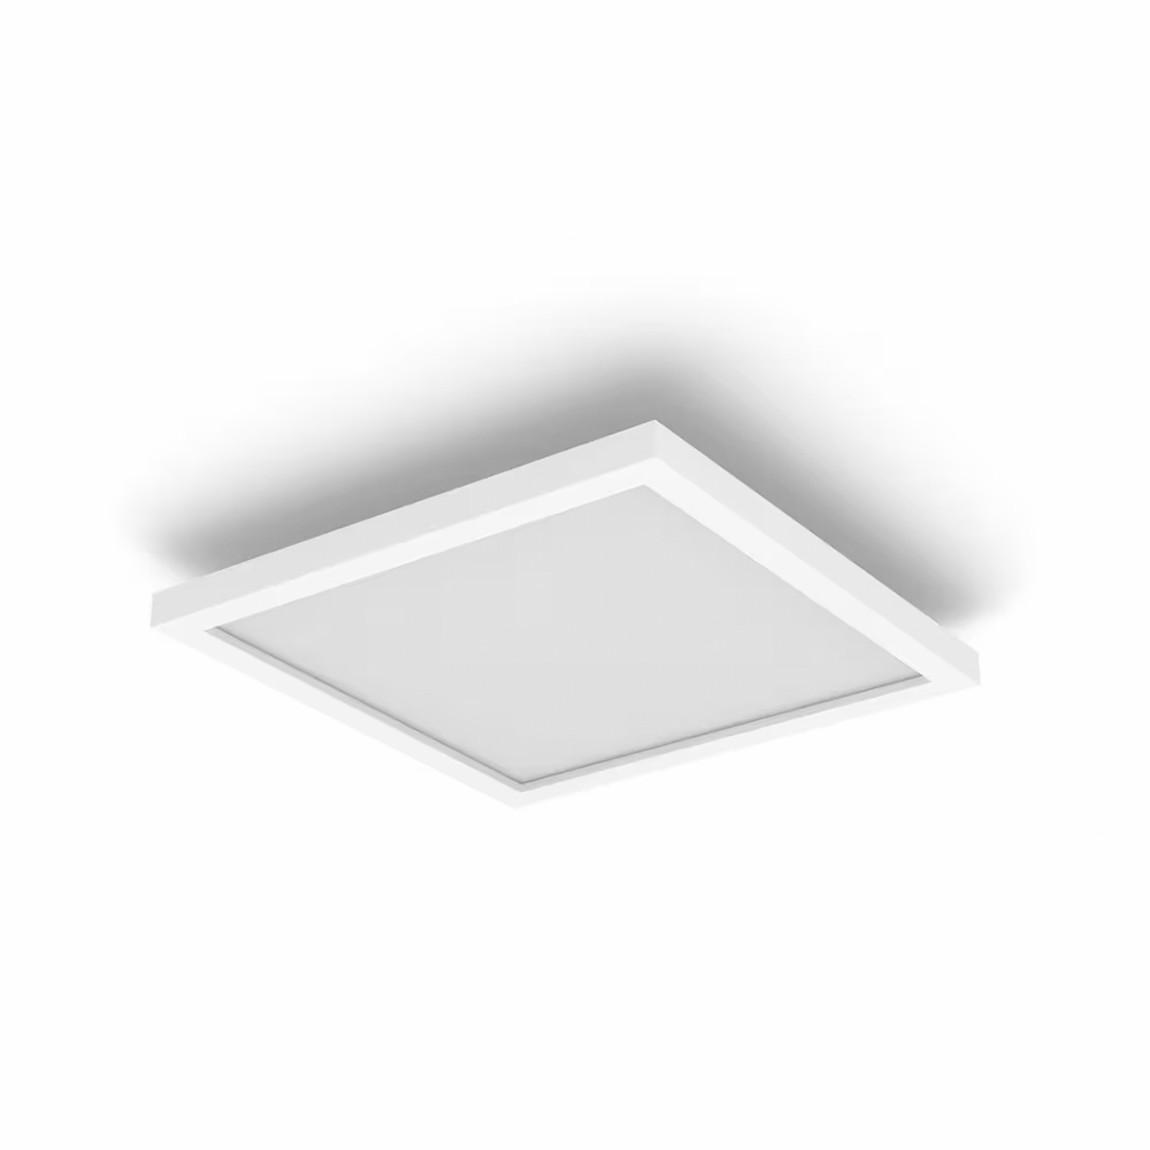 Philips Hue White & Color Ambiance Surimu Panelleuchte 30x30cm - Weiß_ausgeschaltet